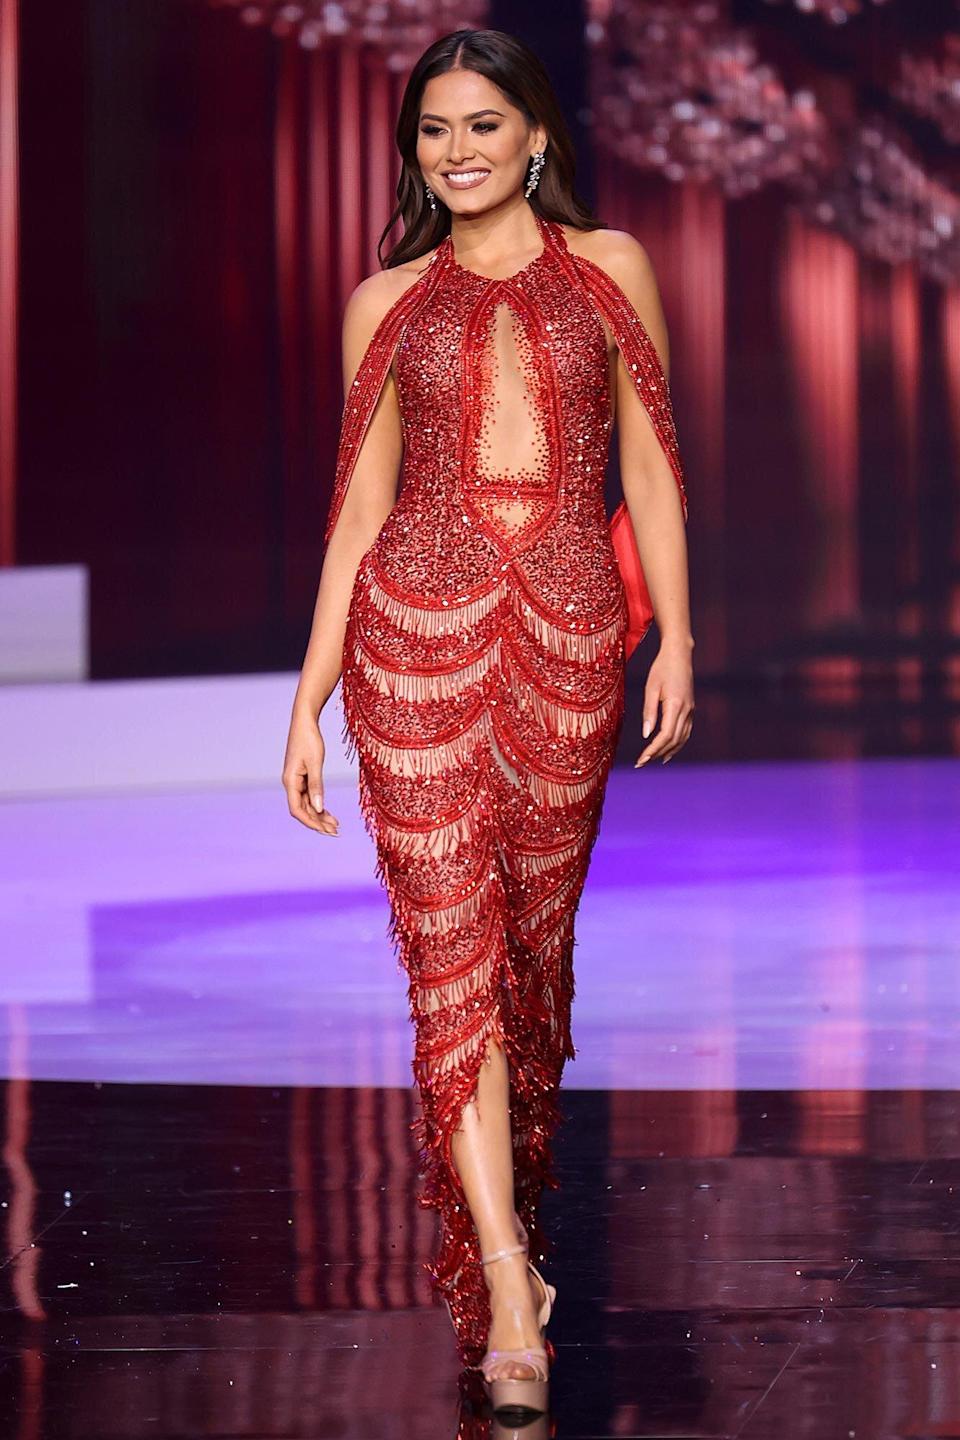 Trong vòng thi trang phục dạ hội, Andrea Meza lựa chọn thiết kế màu đỏ bắt mắt, phom ôm sát để phô diễn đường cong cơ thể. 